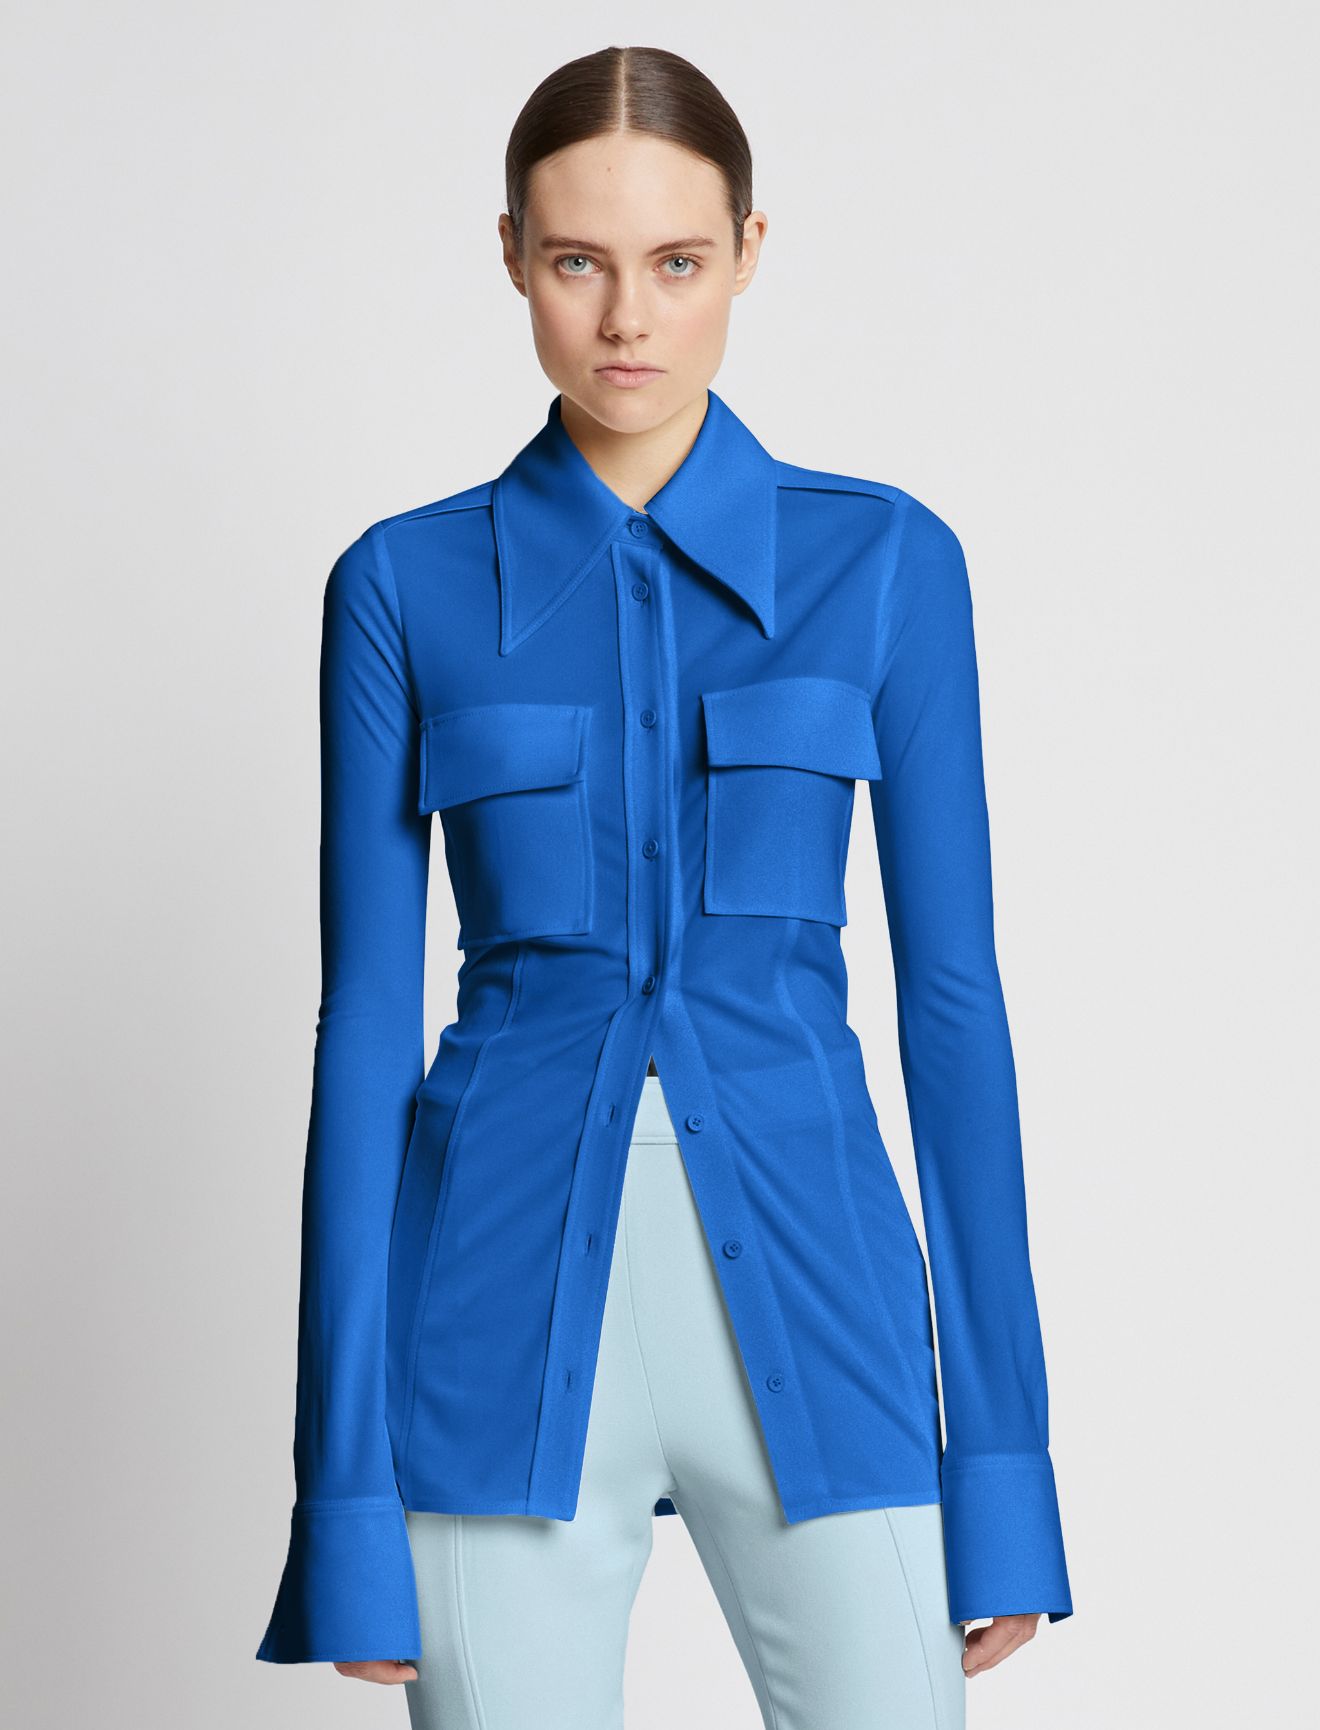 Matte Jersey Shirt in blue | Proenza Schouler